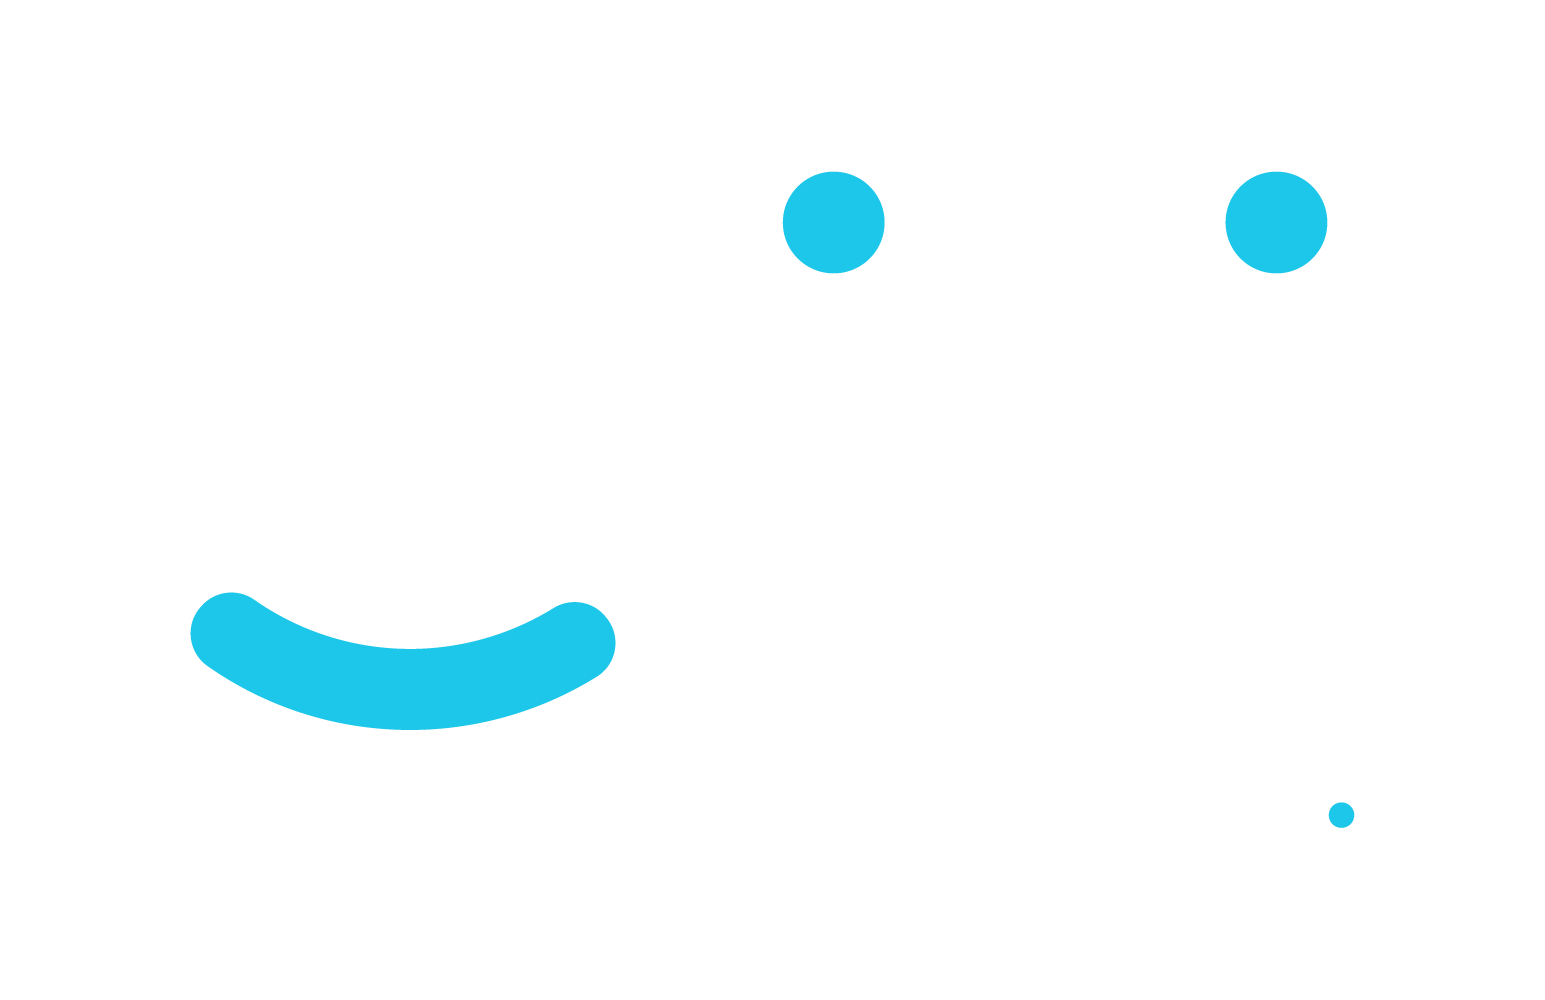 Clivi_Logotipo-tagline_blanco-1